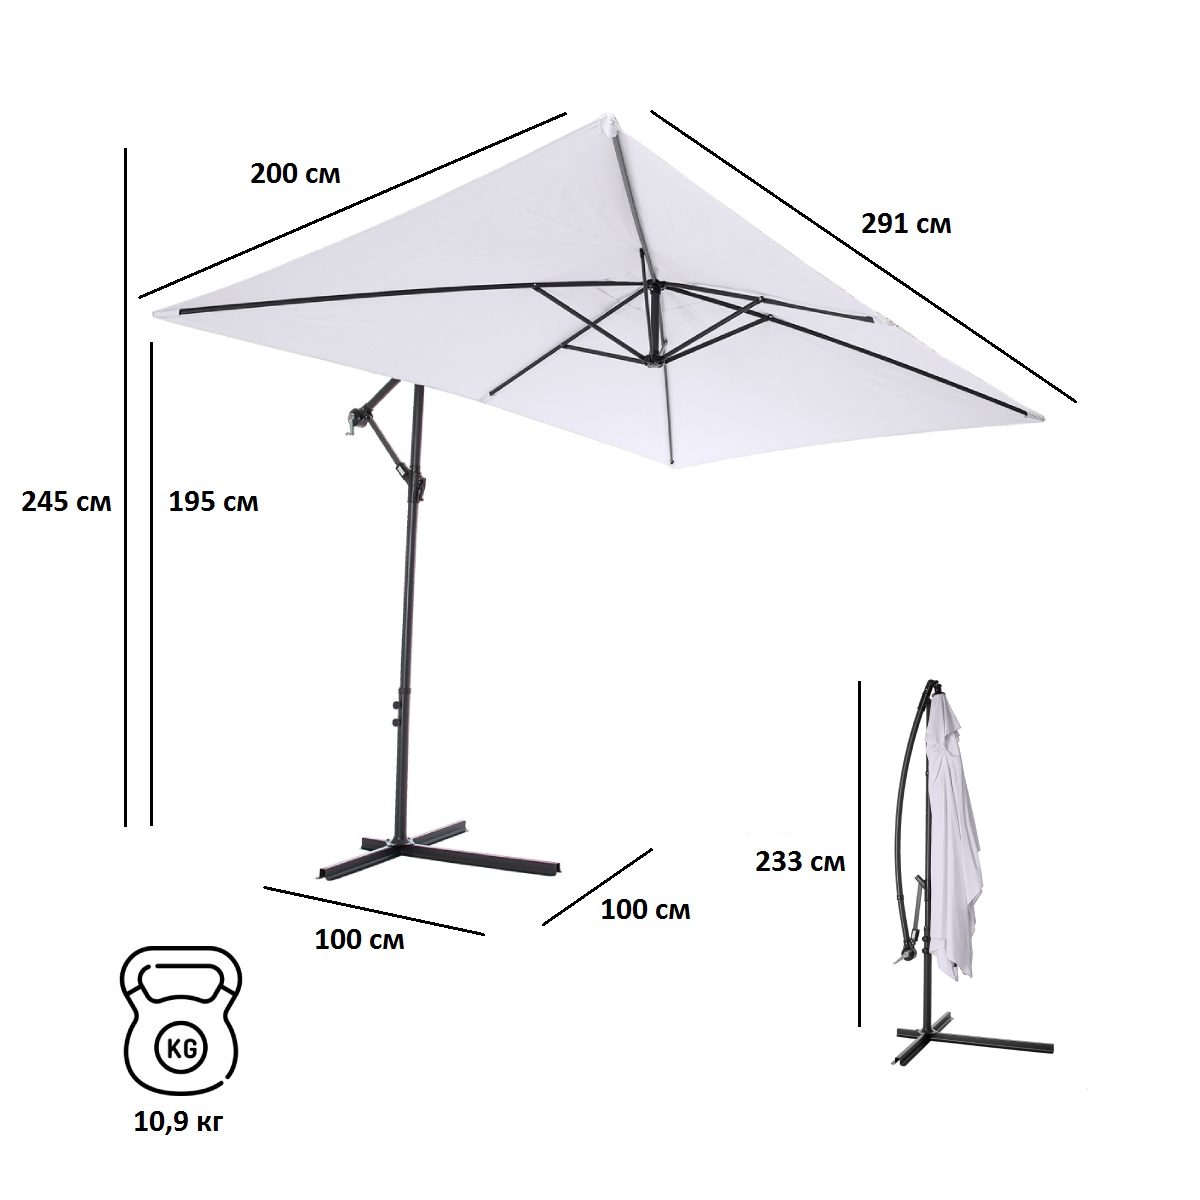 Зонт садовый Green Glade 6402 серый